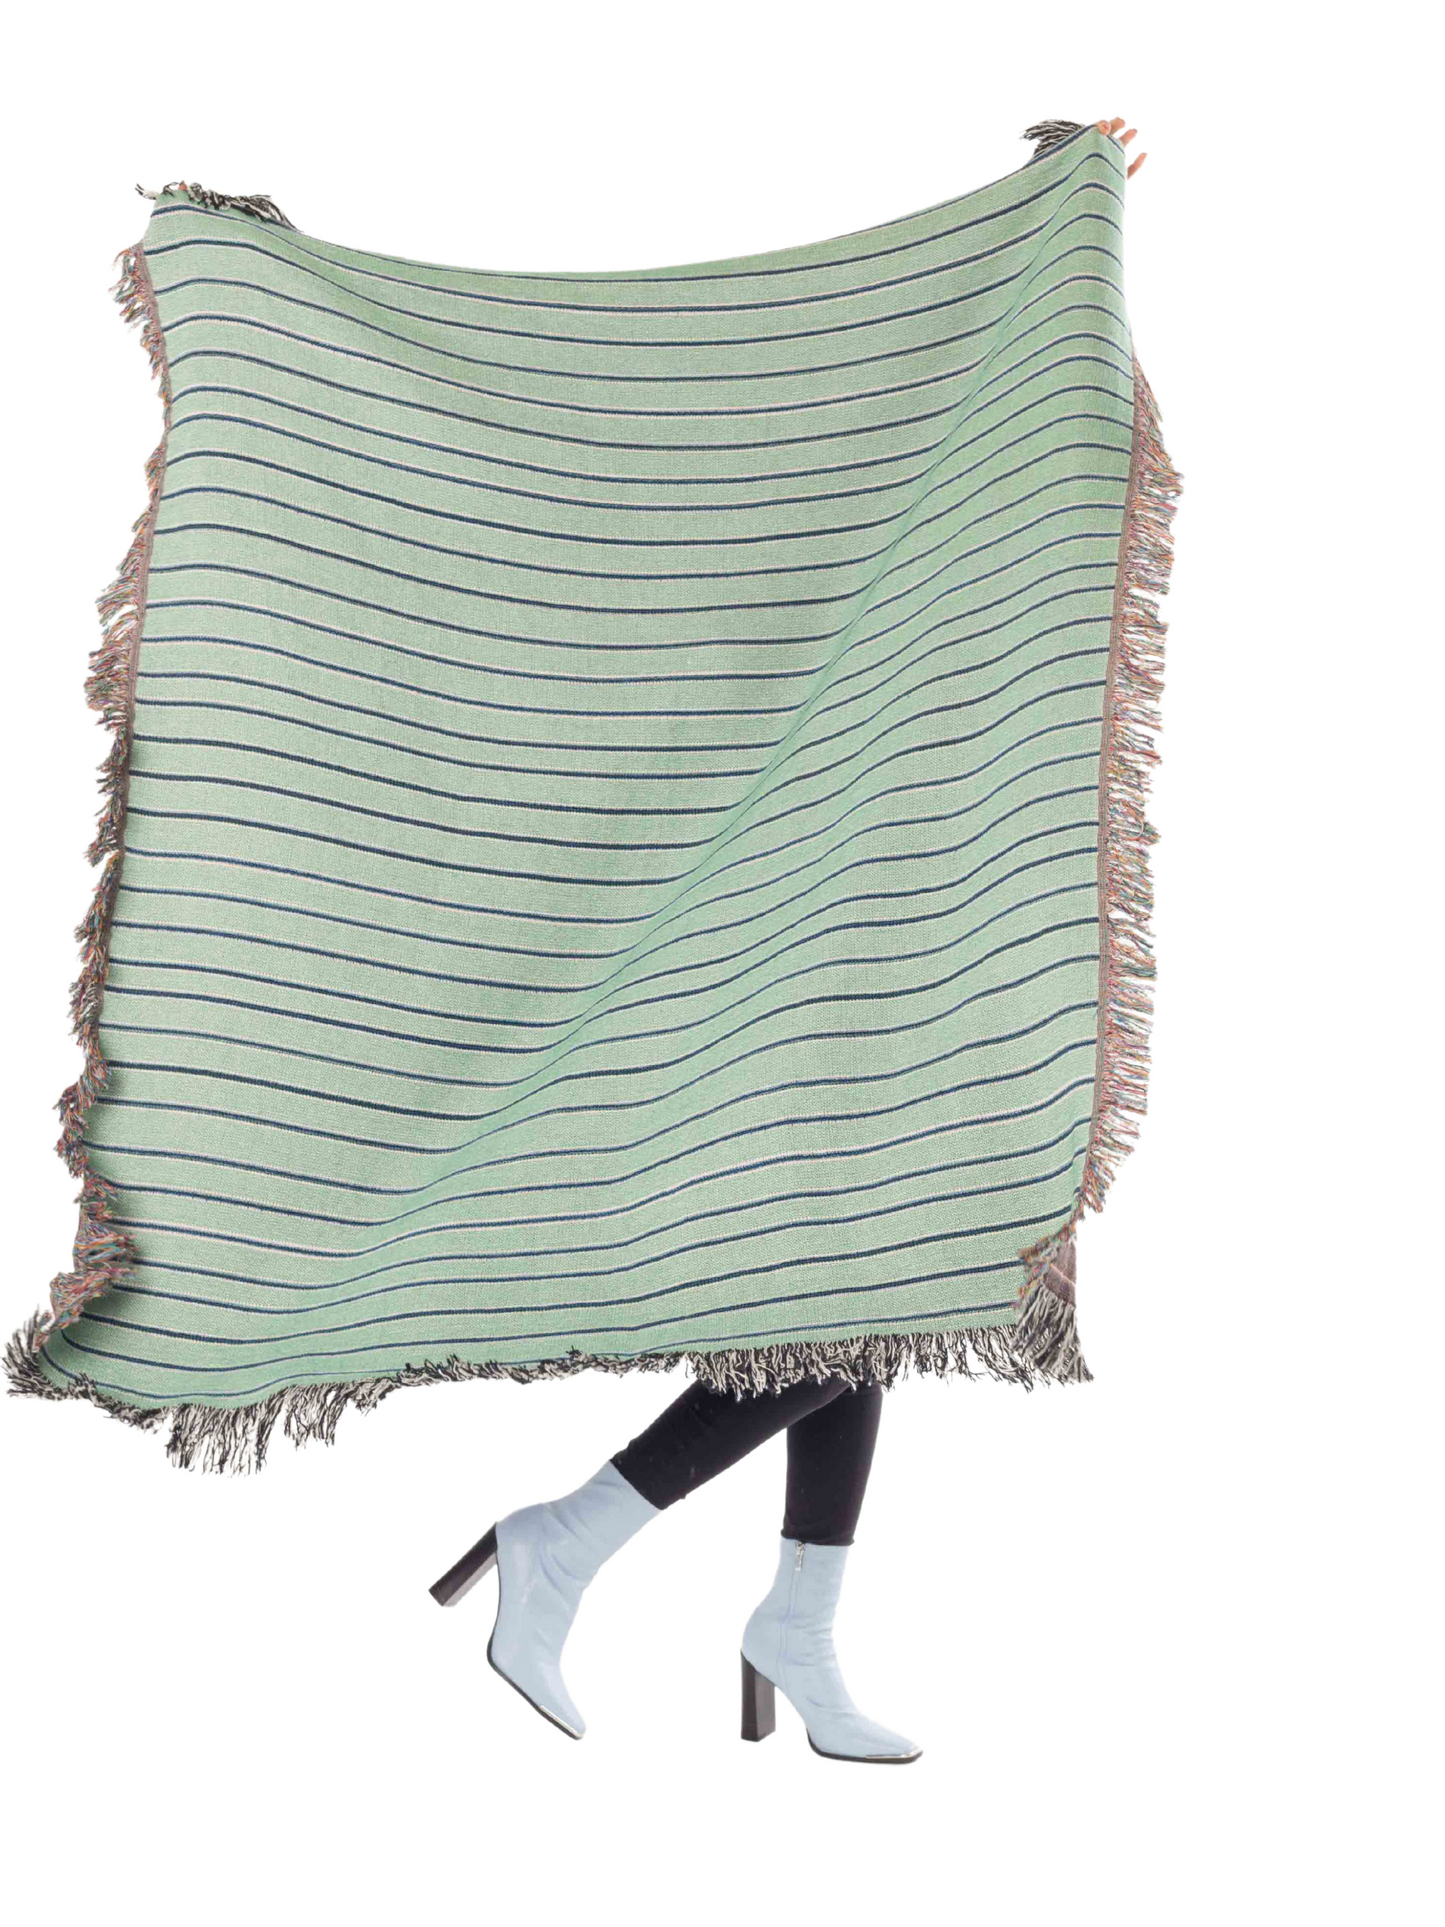 Stripey Woven Throw Blanket